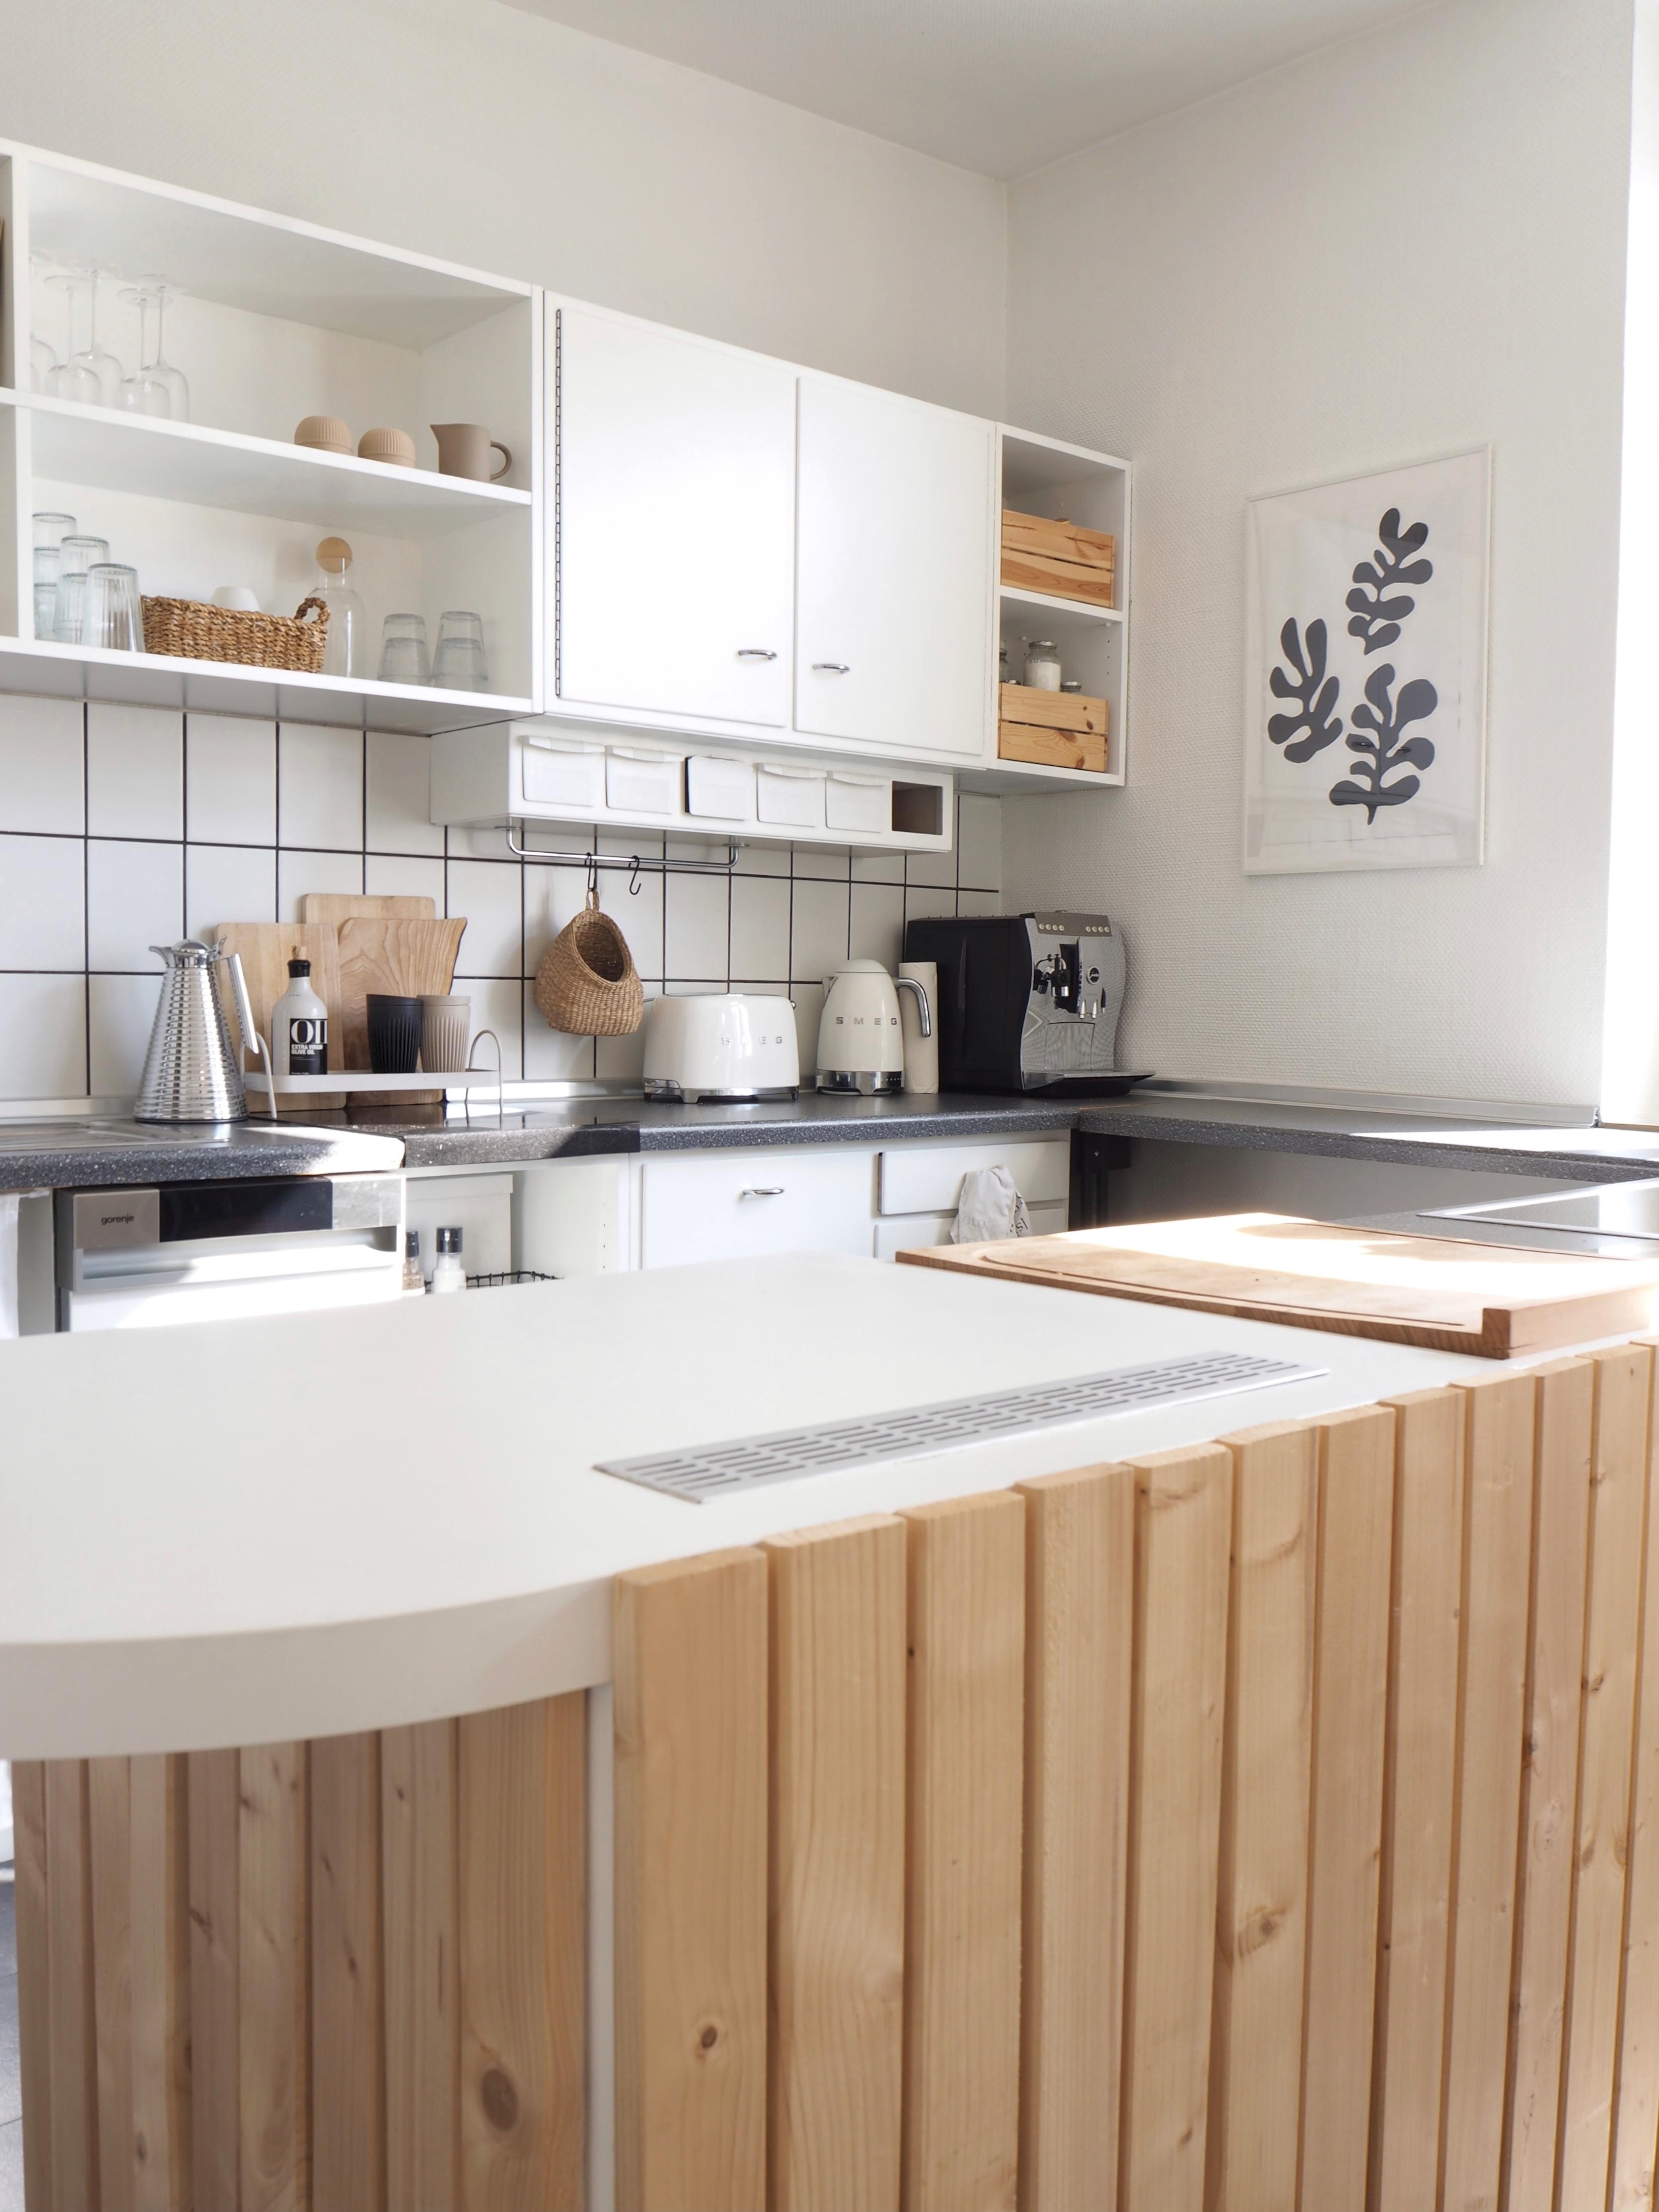 Altbauküche 🤍 #küche #altbau #makeover #holz #diy #naturaldesign #smeg #weiss #whiteliving #kitchen #kochen 